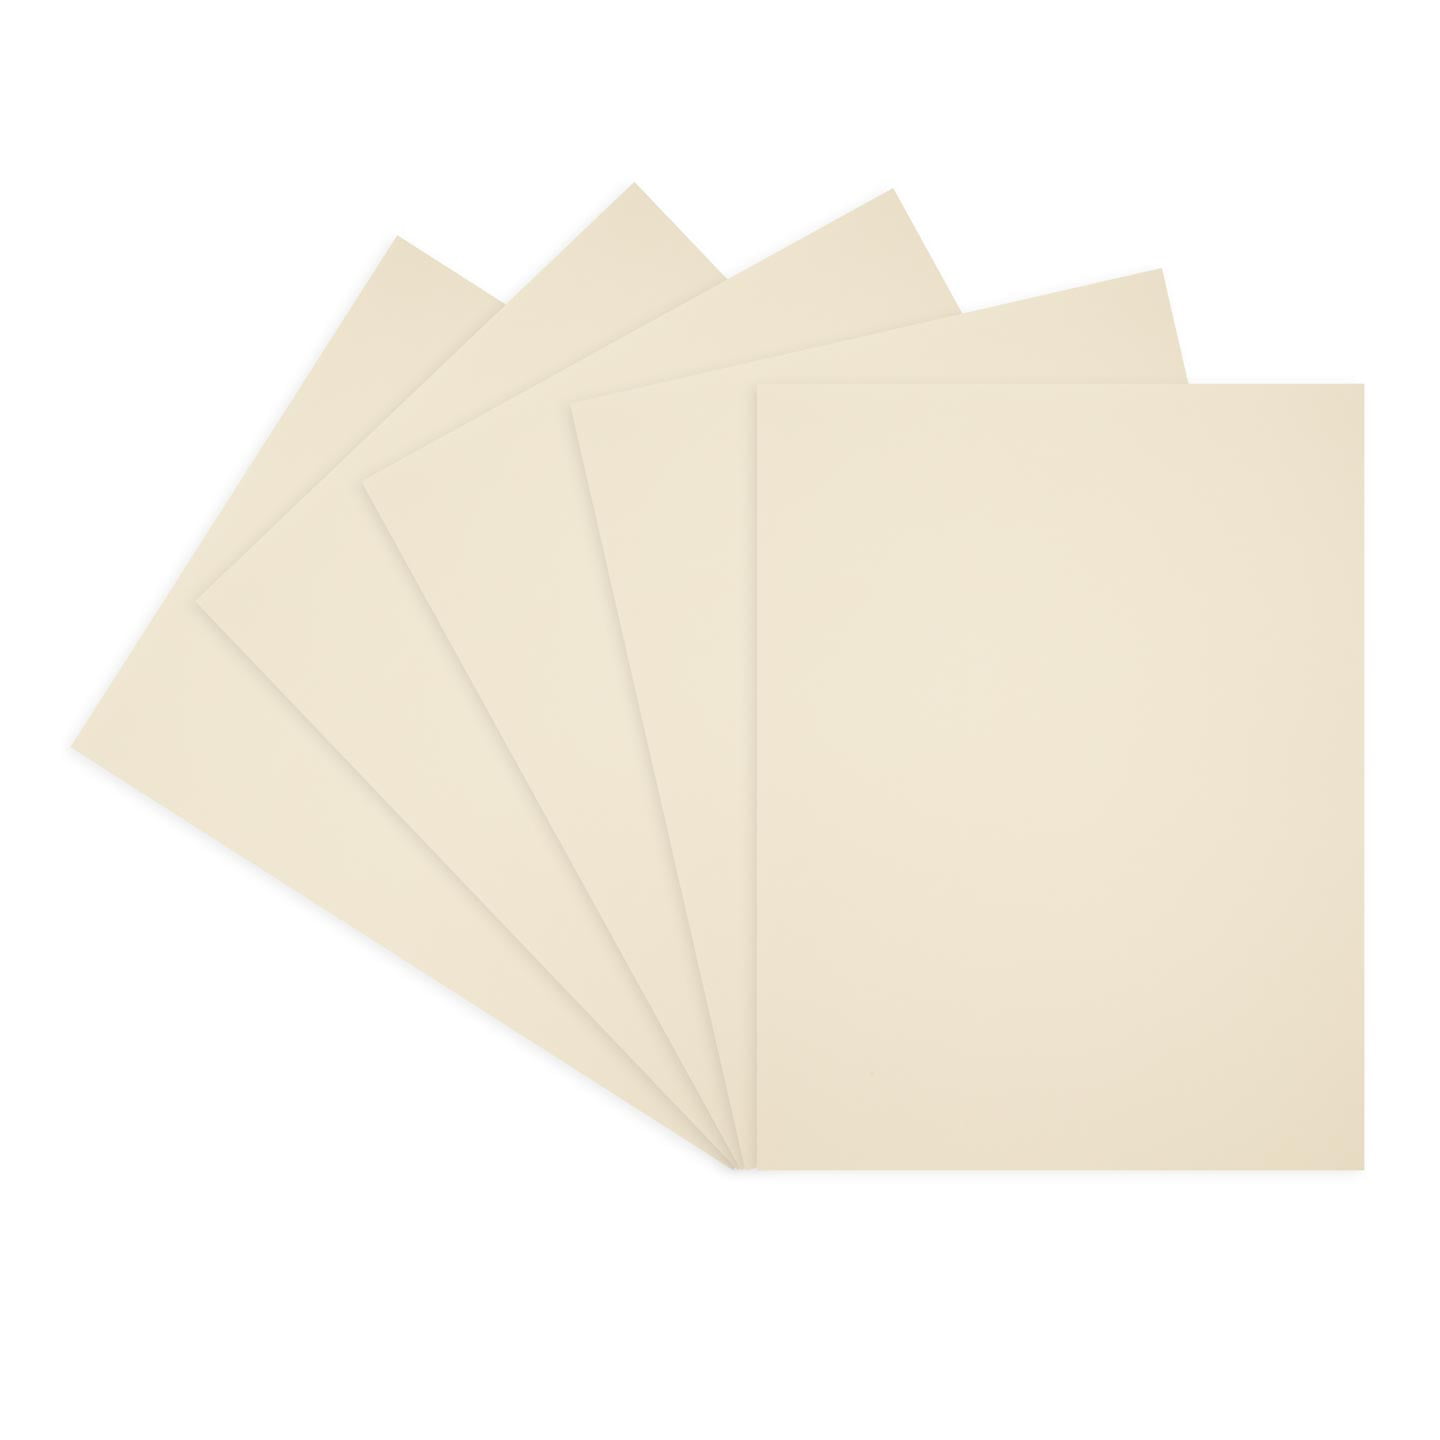  Sunburst Yellow Cardstock Paper – 8 1/2 x 11 Medium